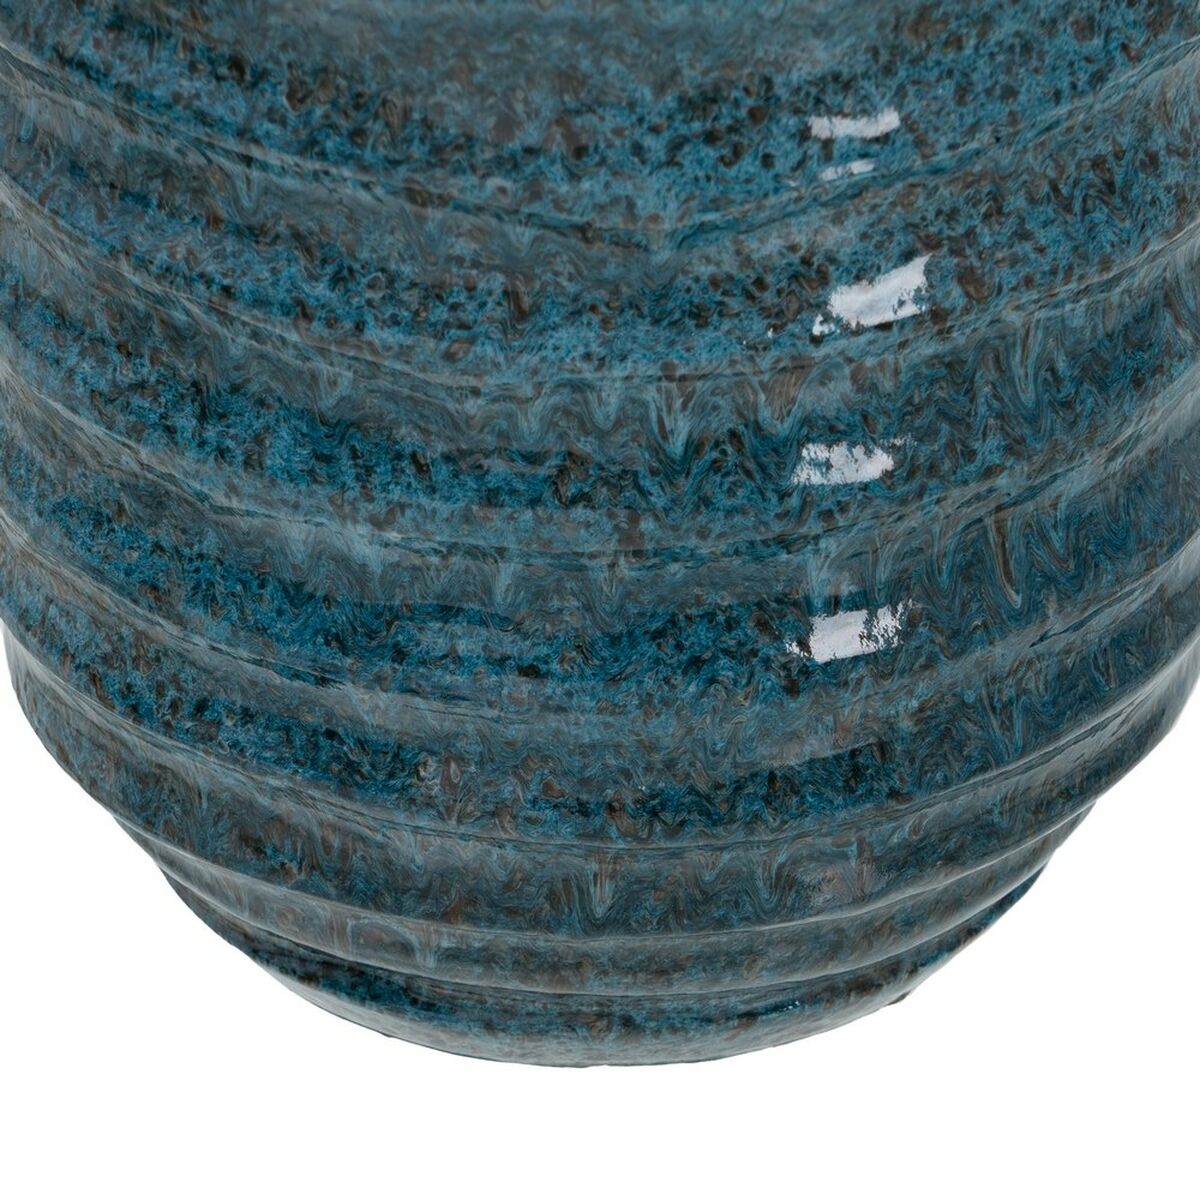 Vase Blau aus Keramik 16 x 16 x 40 cm